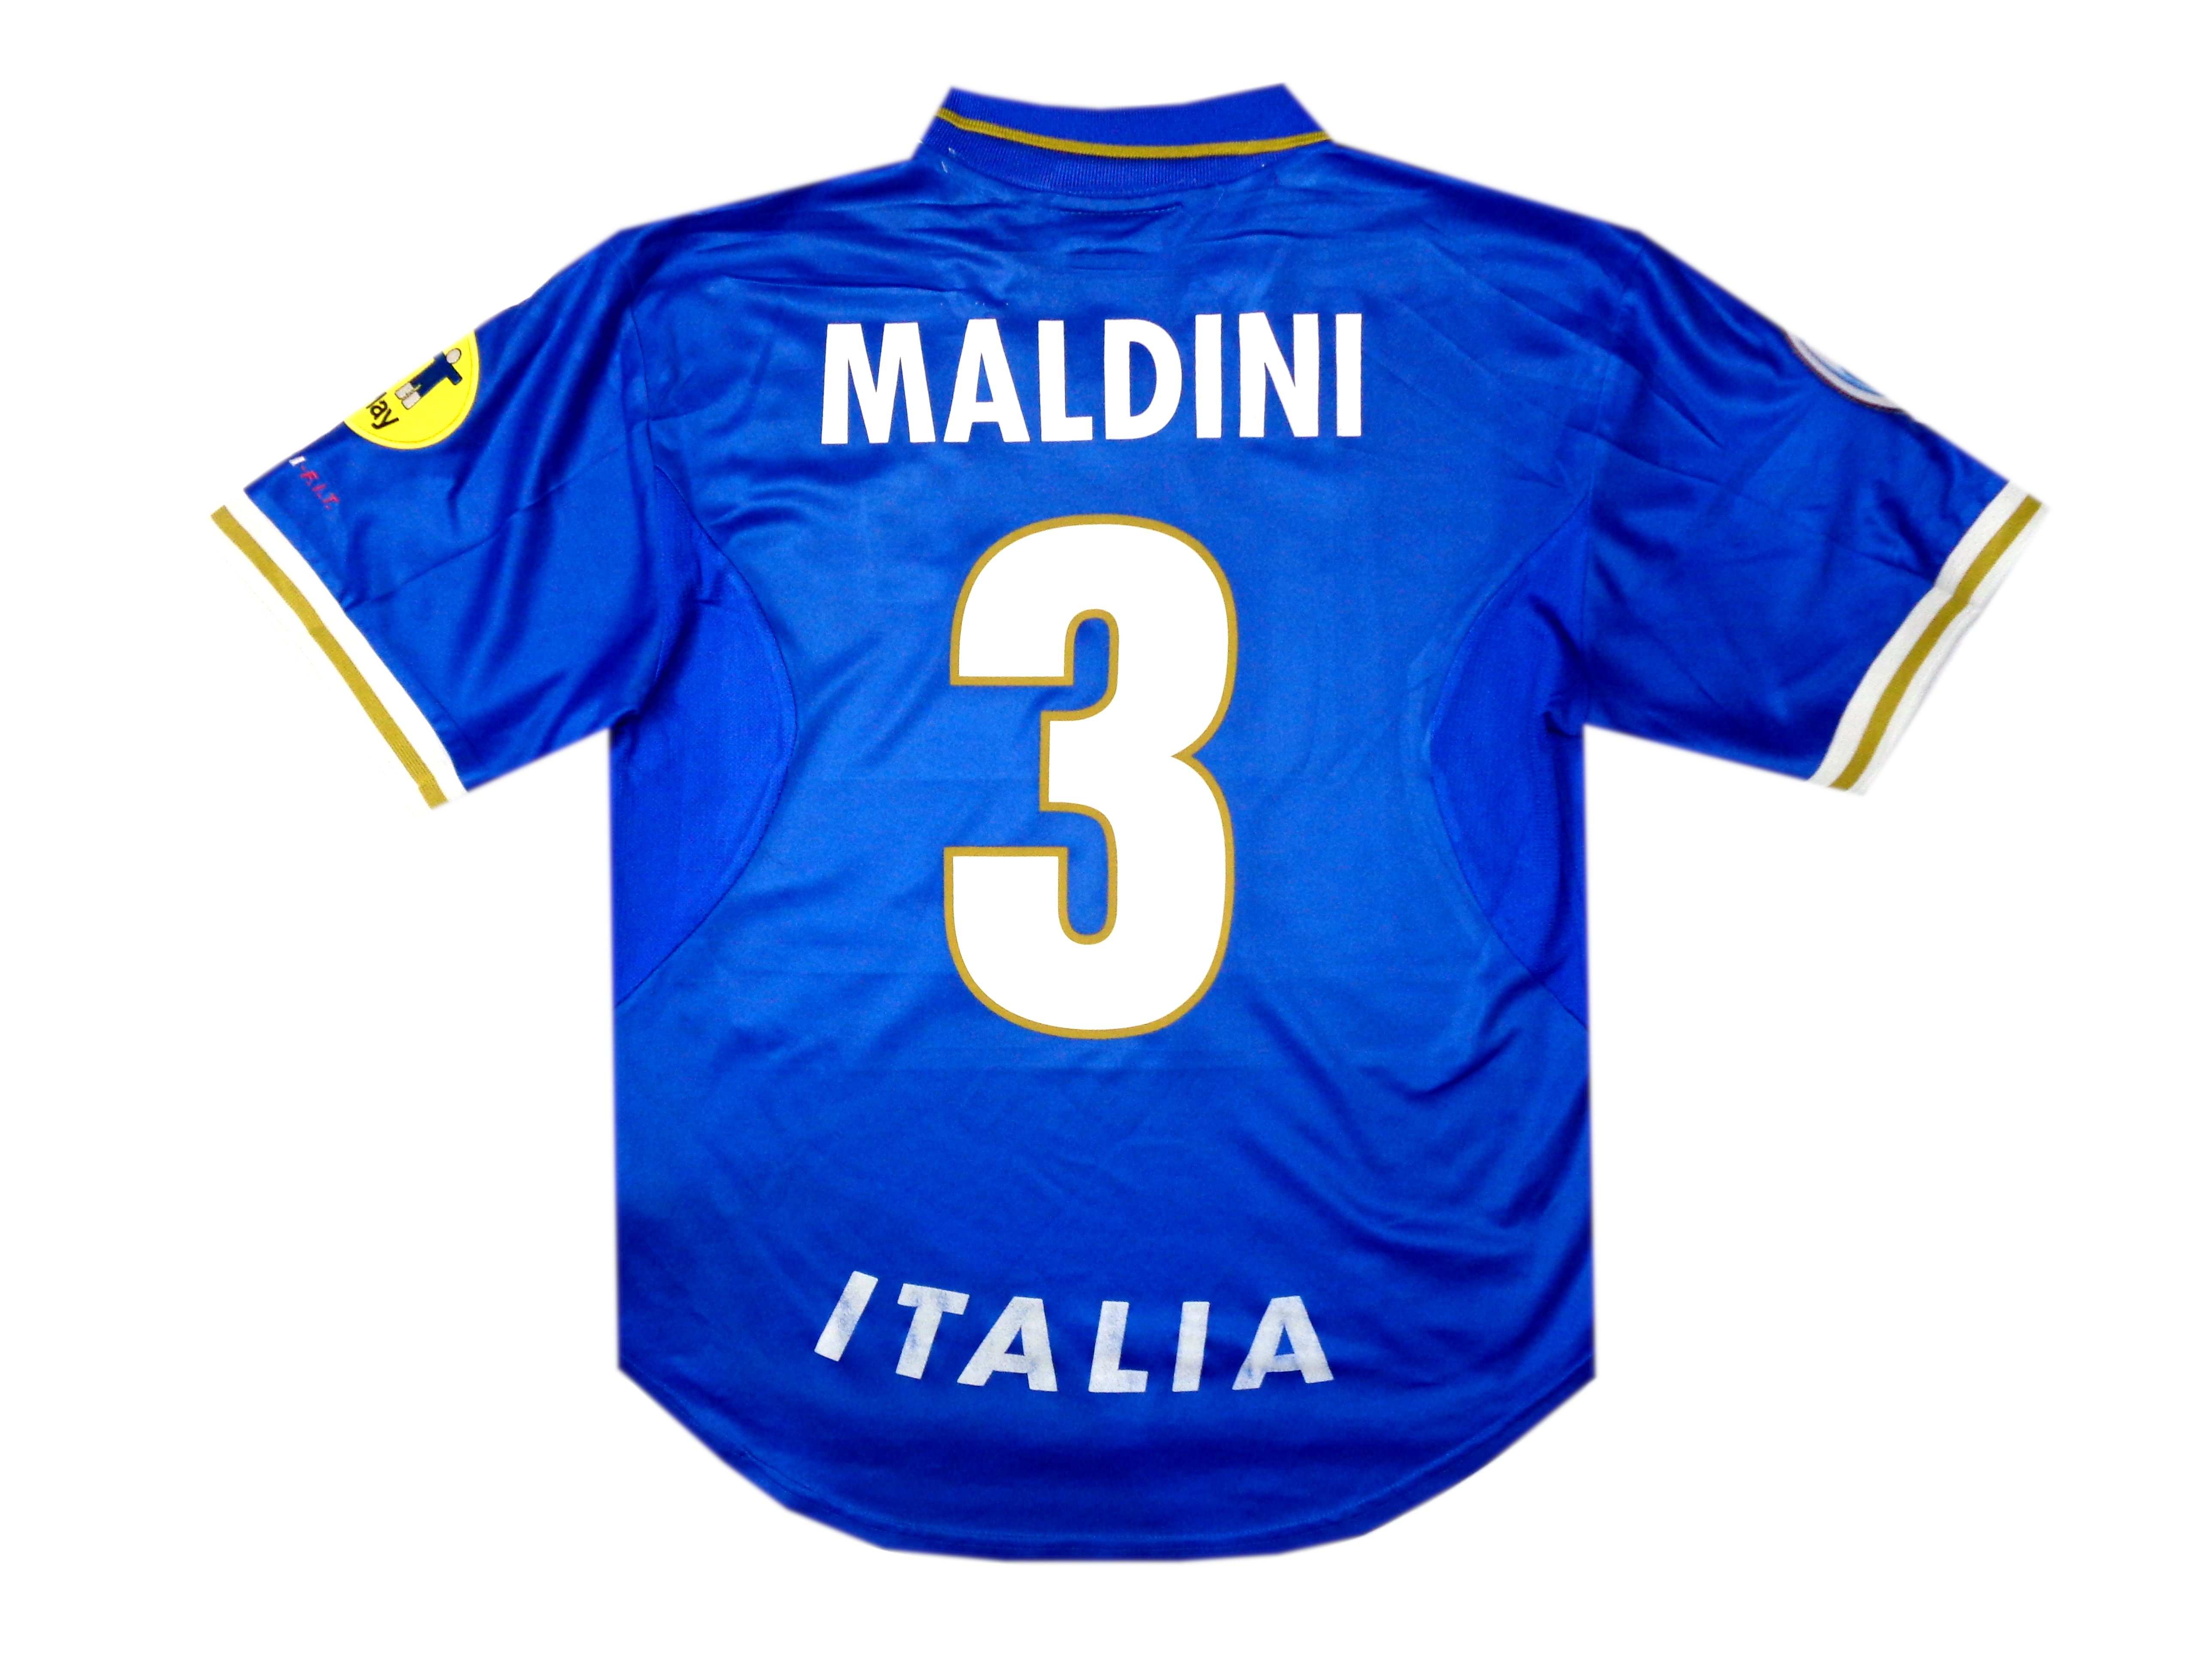 MALDINI #3 - ITALY EURO 1996 SHIRT - NIKE - SIZE LARGE